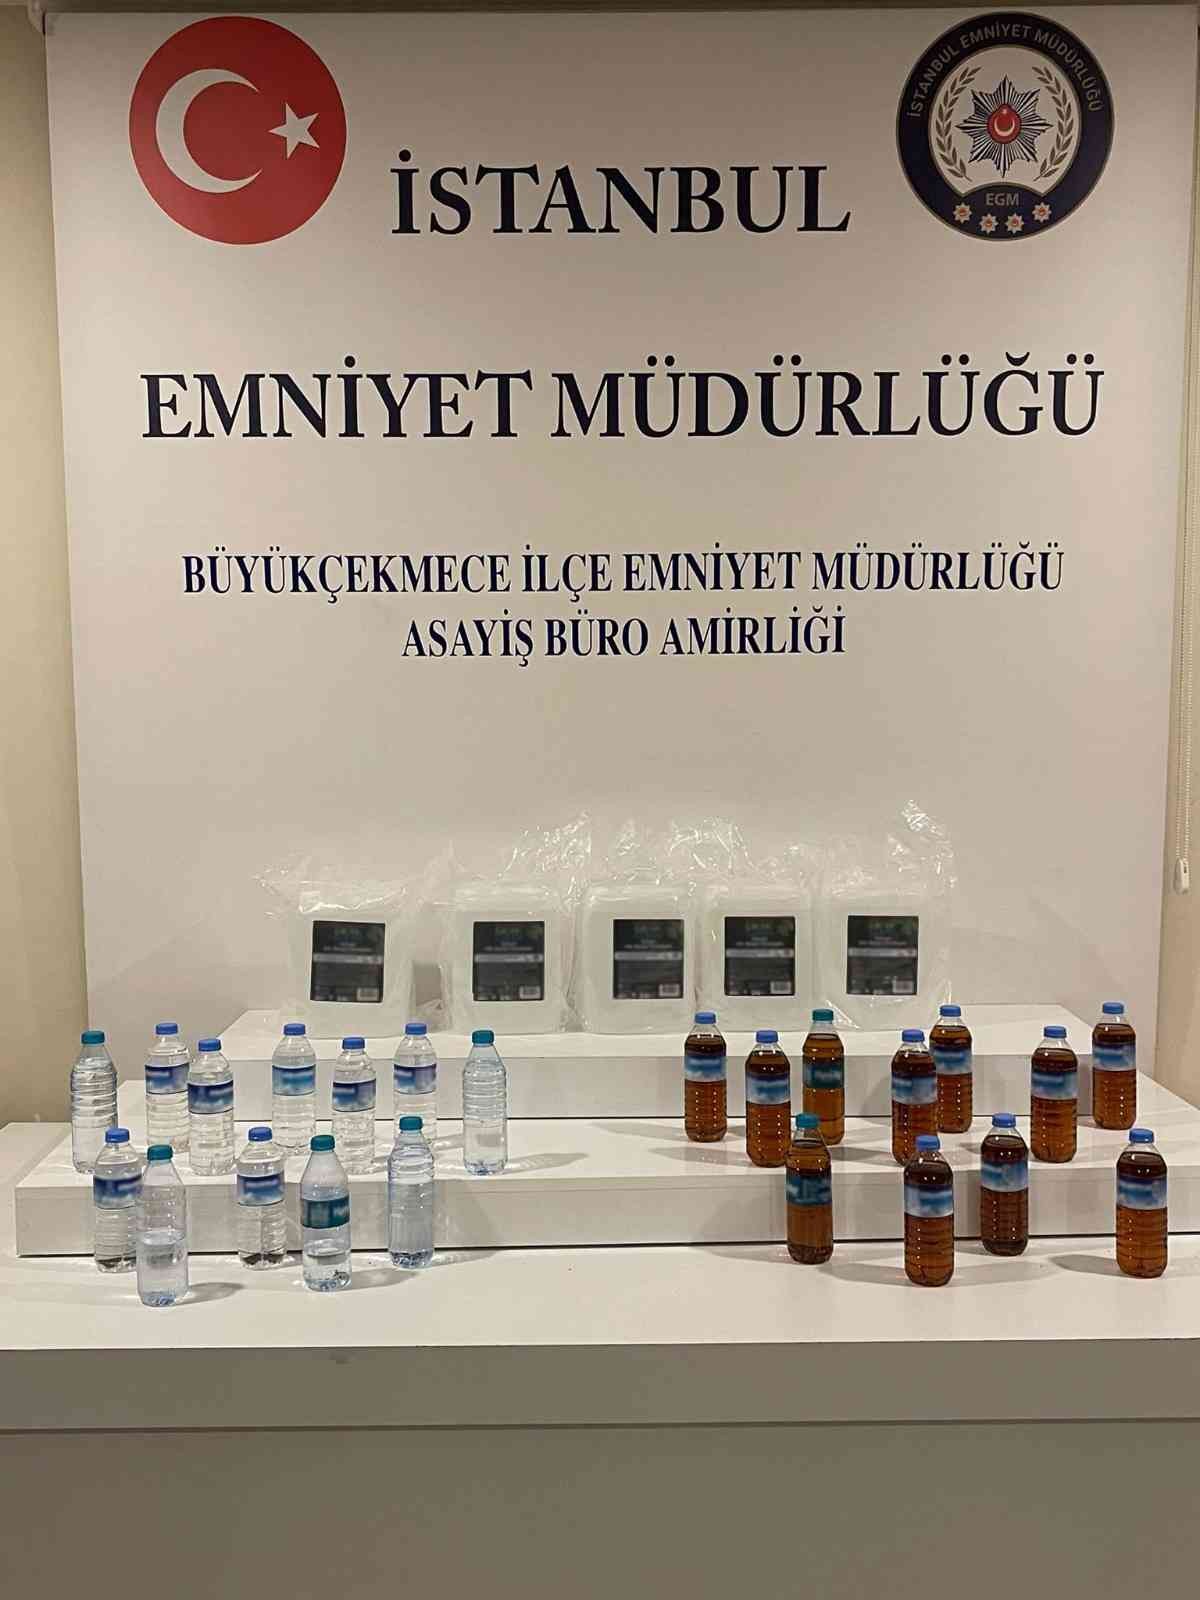 Büyükçekmece’de sahte alkol operasyonu #istanbul